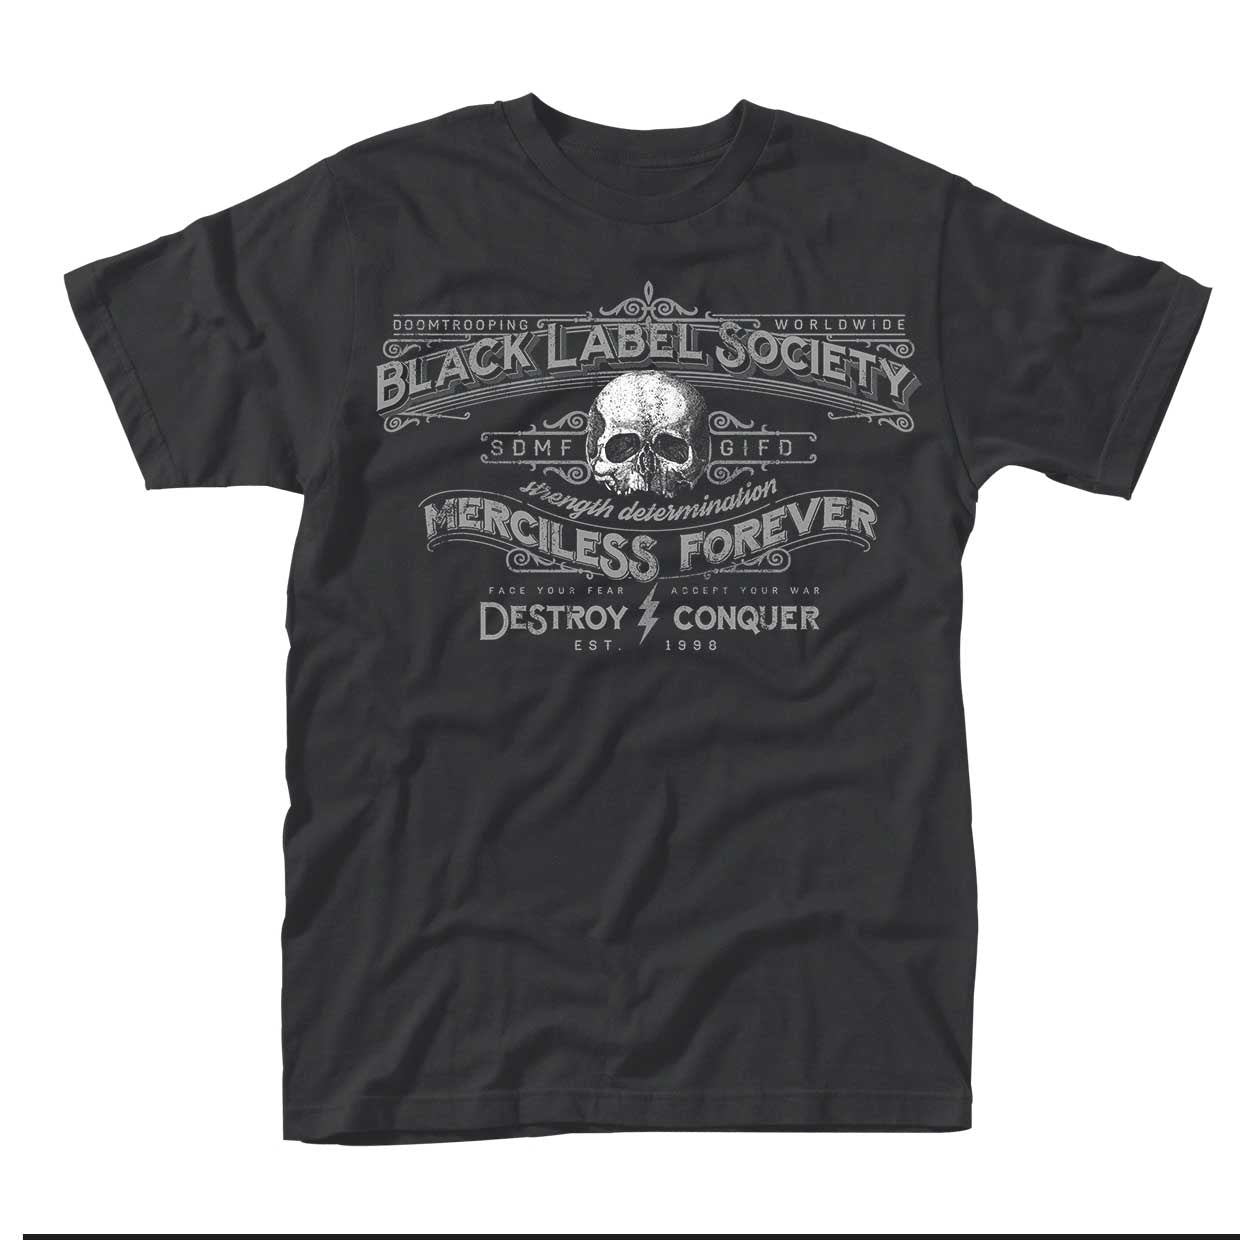 Black Label Society "Merciless Forever" T shirt